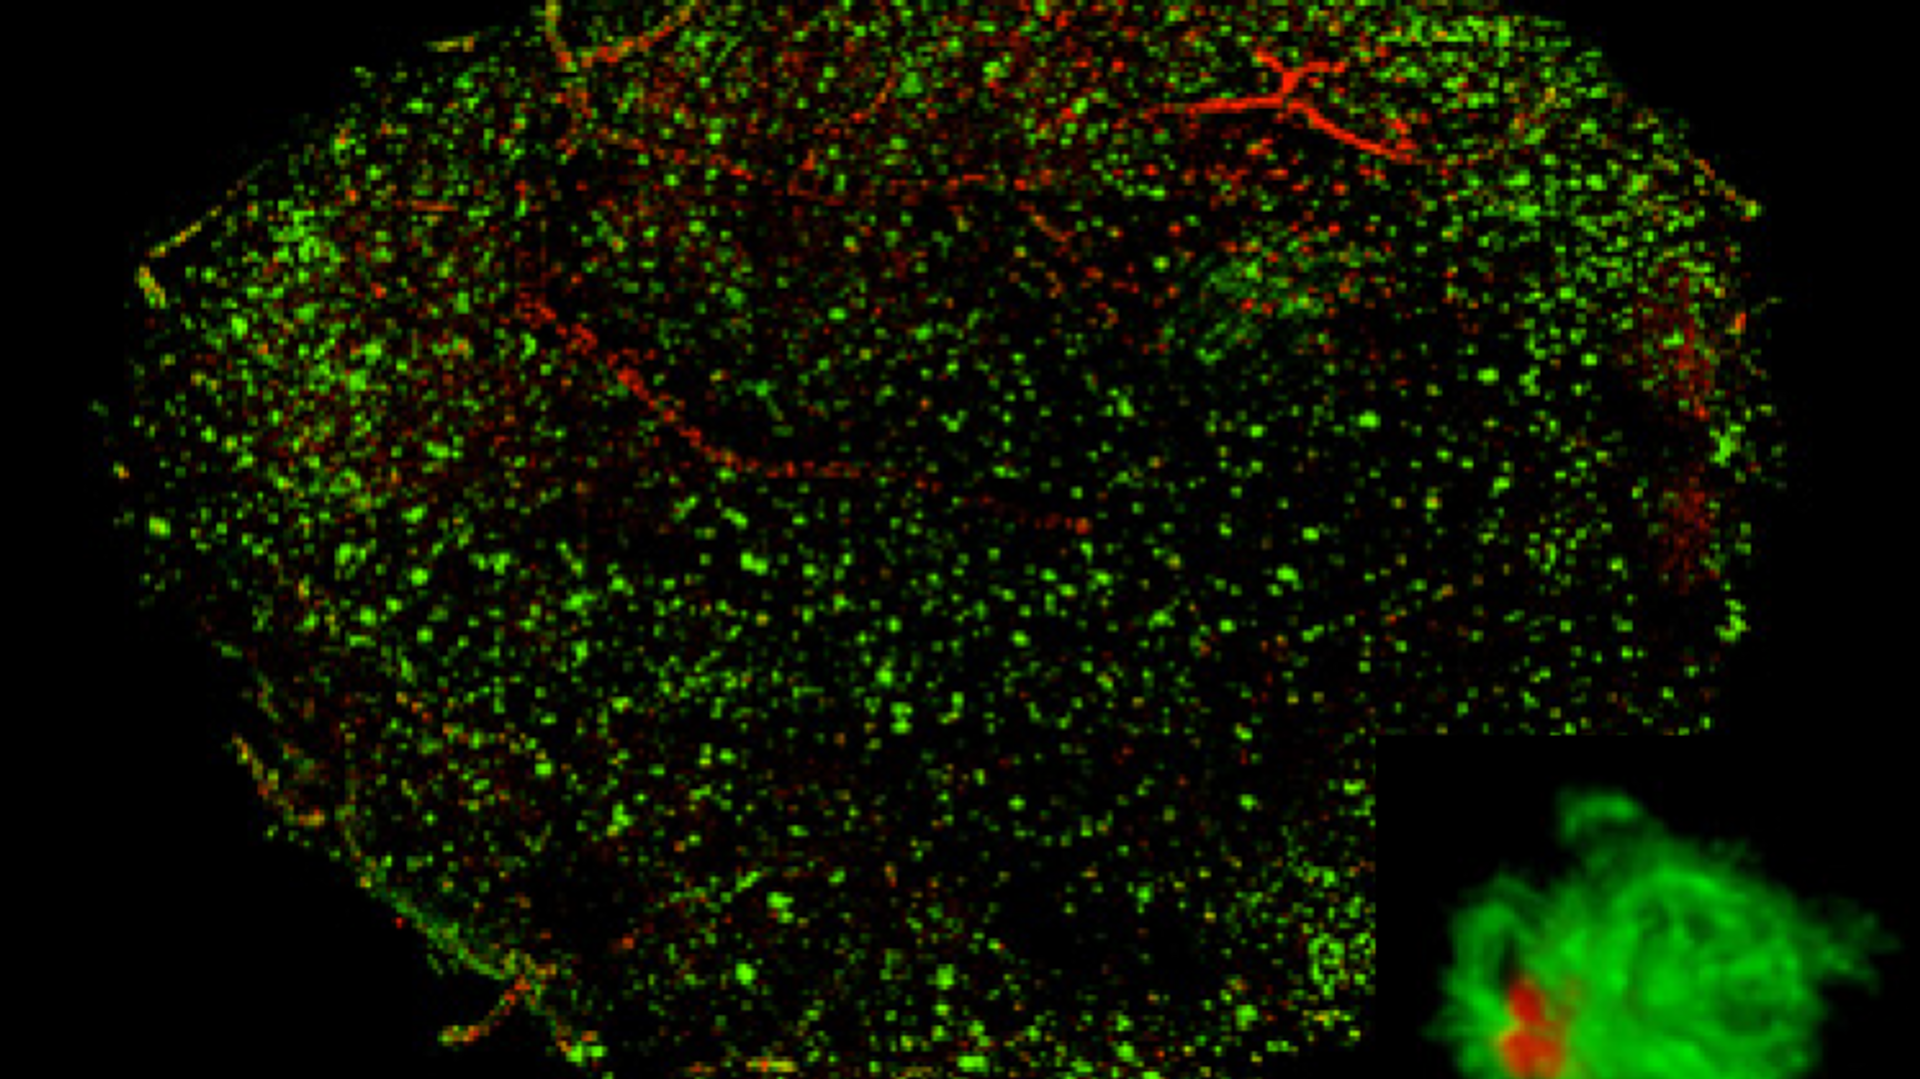 Бляшки бета-амилоида (показаны красным цветом), возникшие в мозге людей с болезнью Альцгеймера - РИА Новости, 1920, 01.02.2021